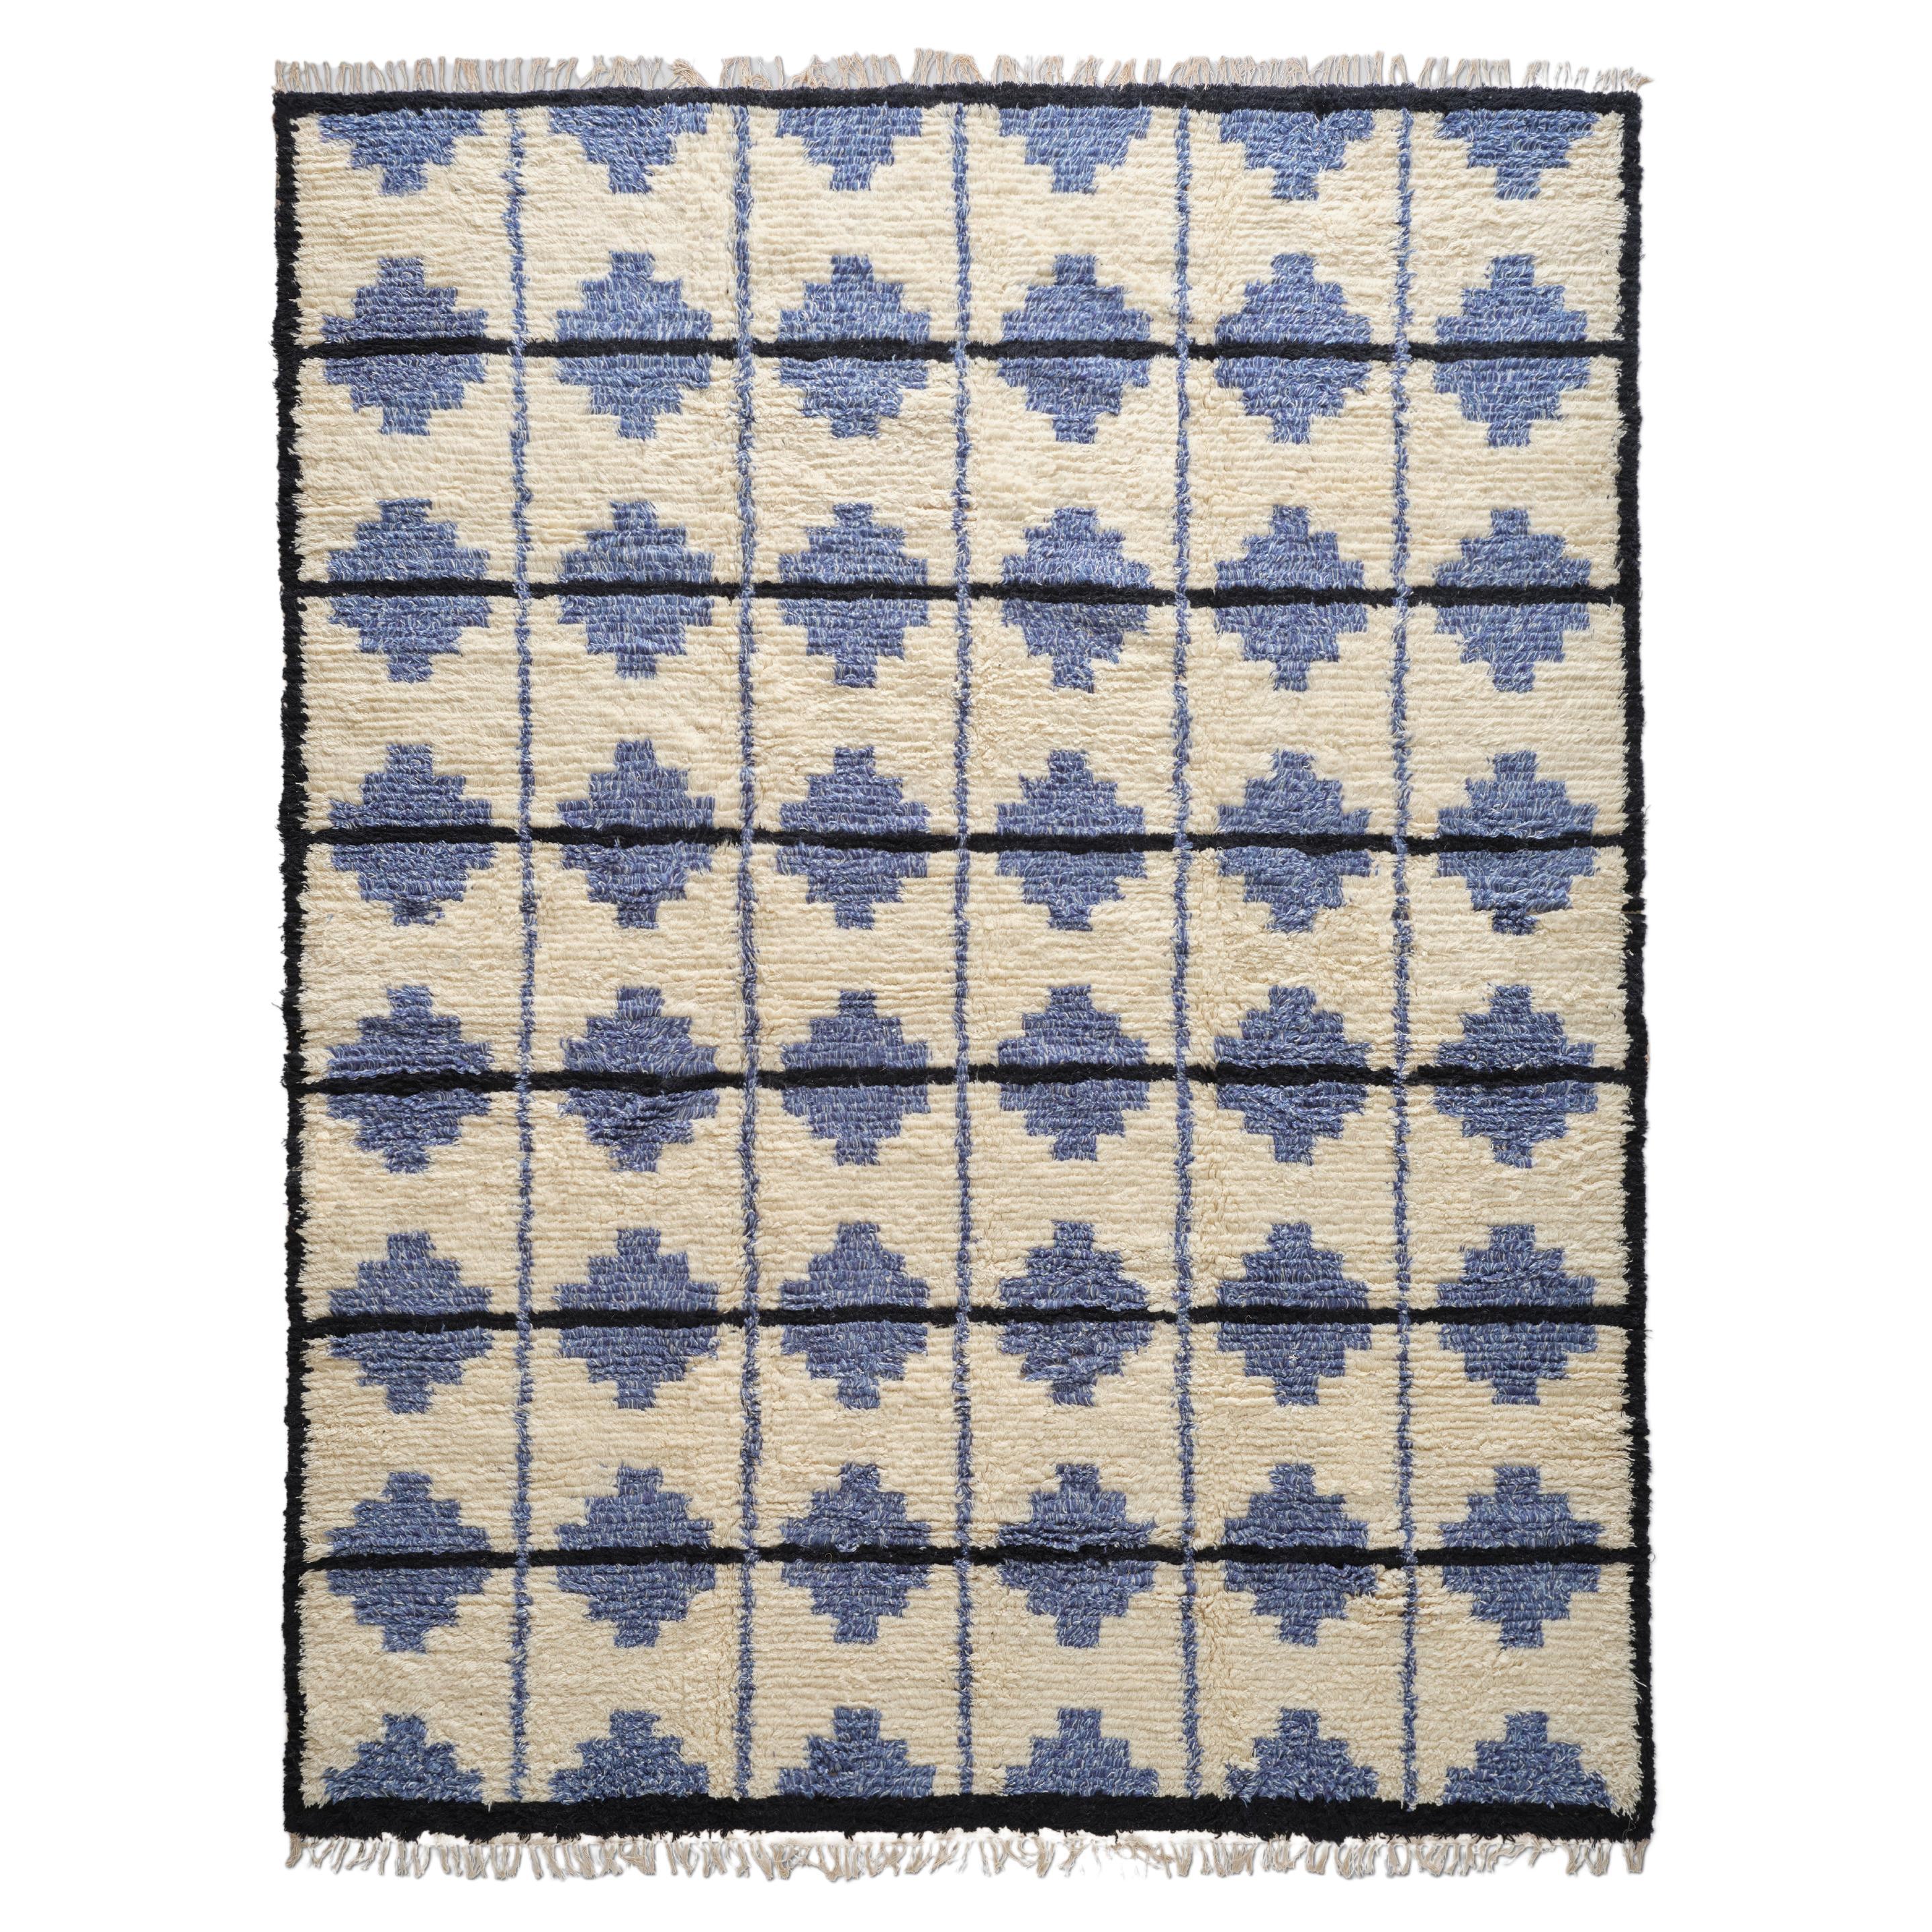 The Forsyth Shaggy Tile Rug - Blue and Cream, 8x10 For Sale